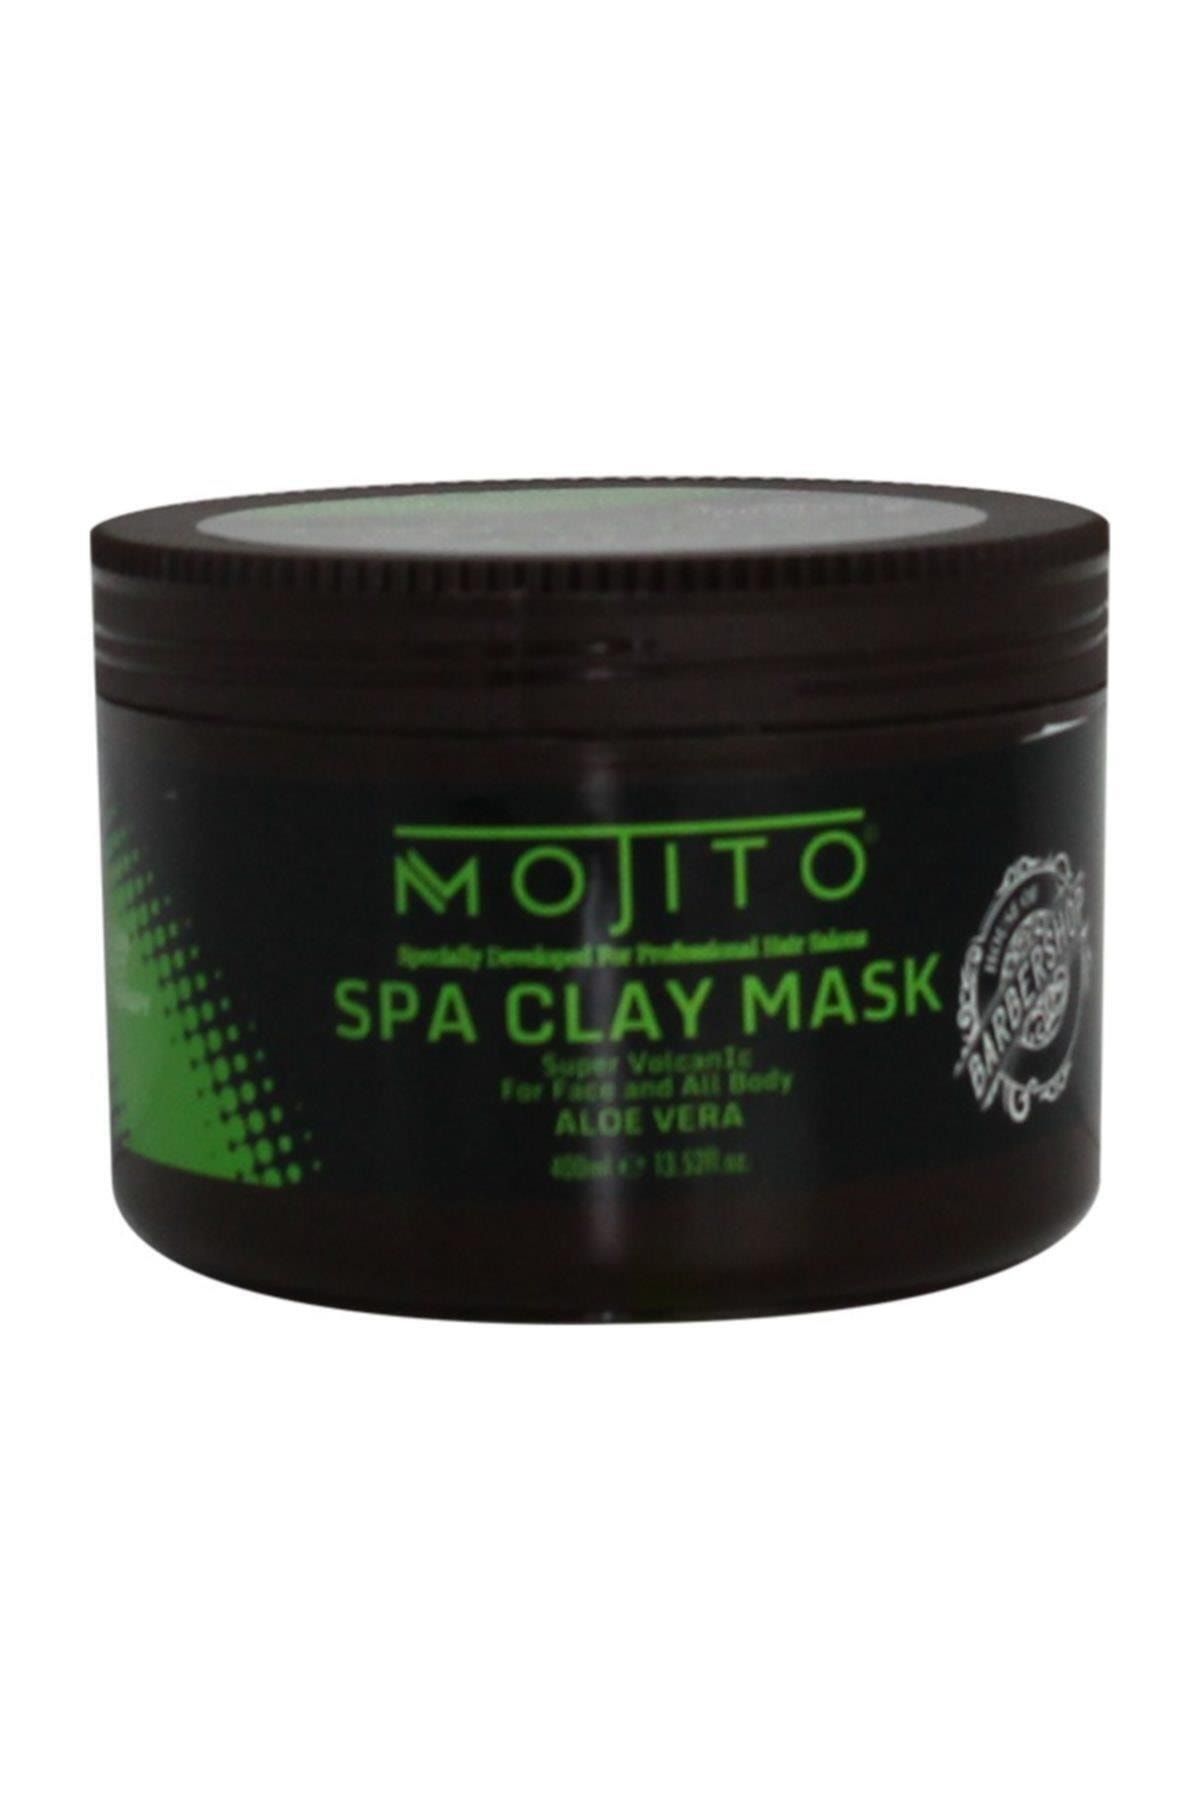 Mojito Spa Clay Mask Aloe Vera 400ml